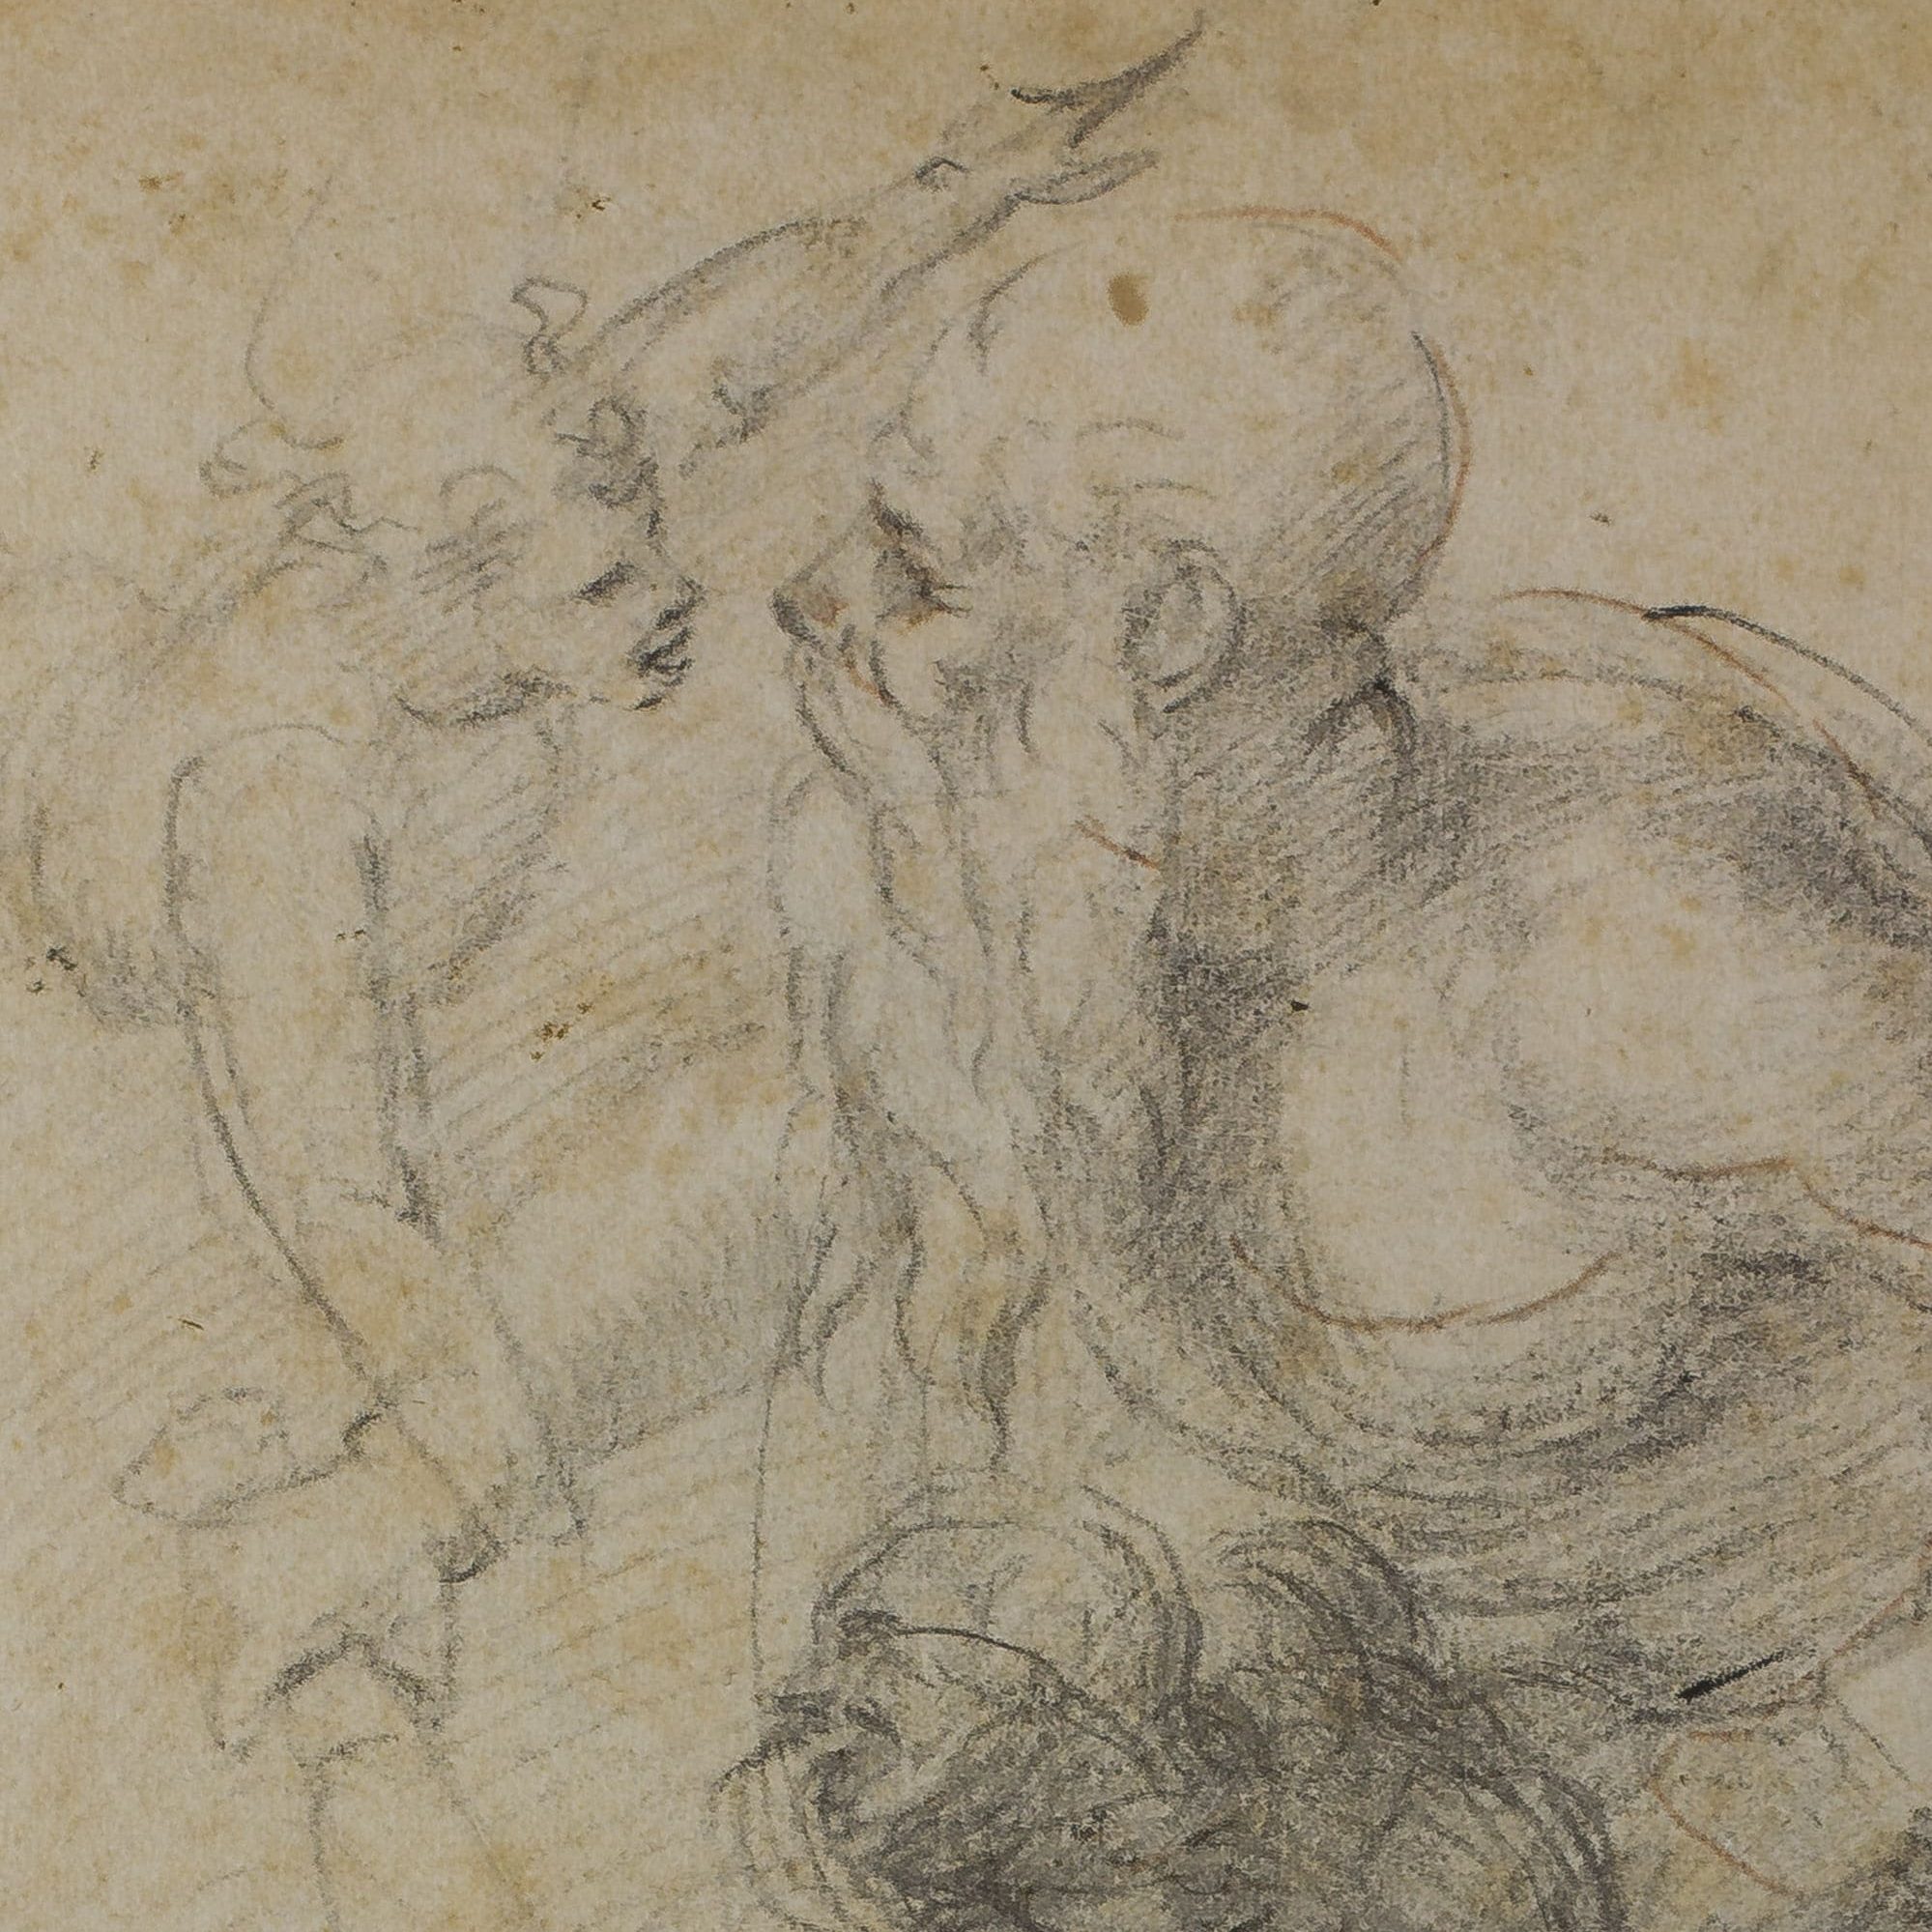 Capolavoro per Lecco | Il mistero del padre. Il segno di Michelangelo | Palazzo delle Paure, Lecco